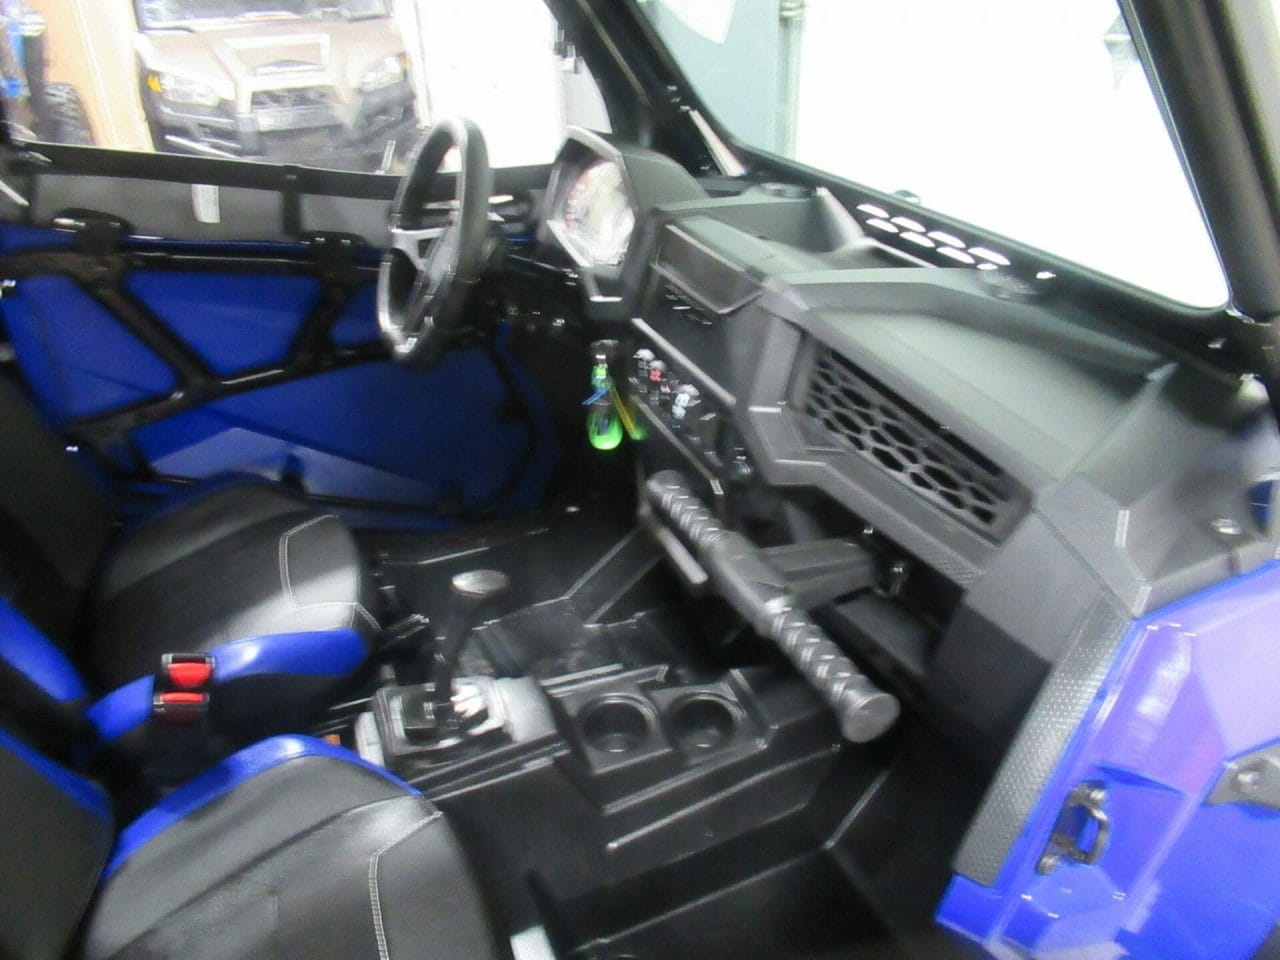 2022 Polaris RZR 1000 S Premium EPS * Full Soft Cab w Heater * 